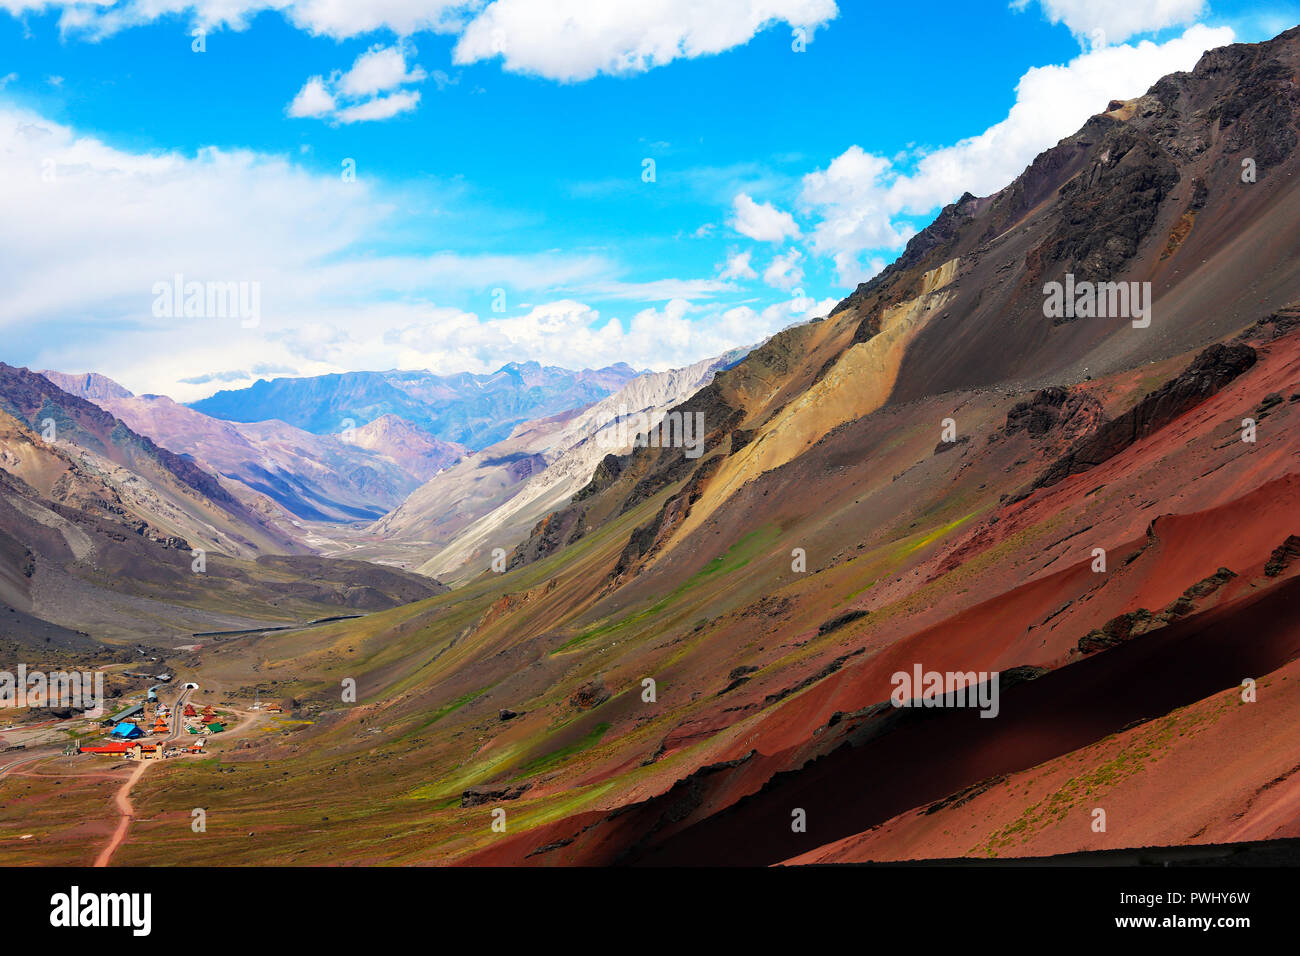 Les motifs de couleurs dans les montagnes, pris près de Uspallata (Argentine). Banque D'Images